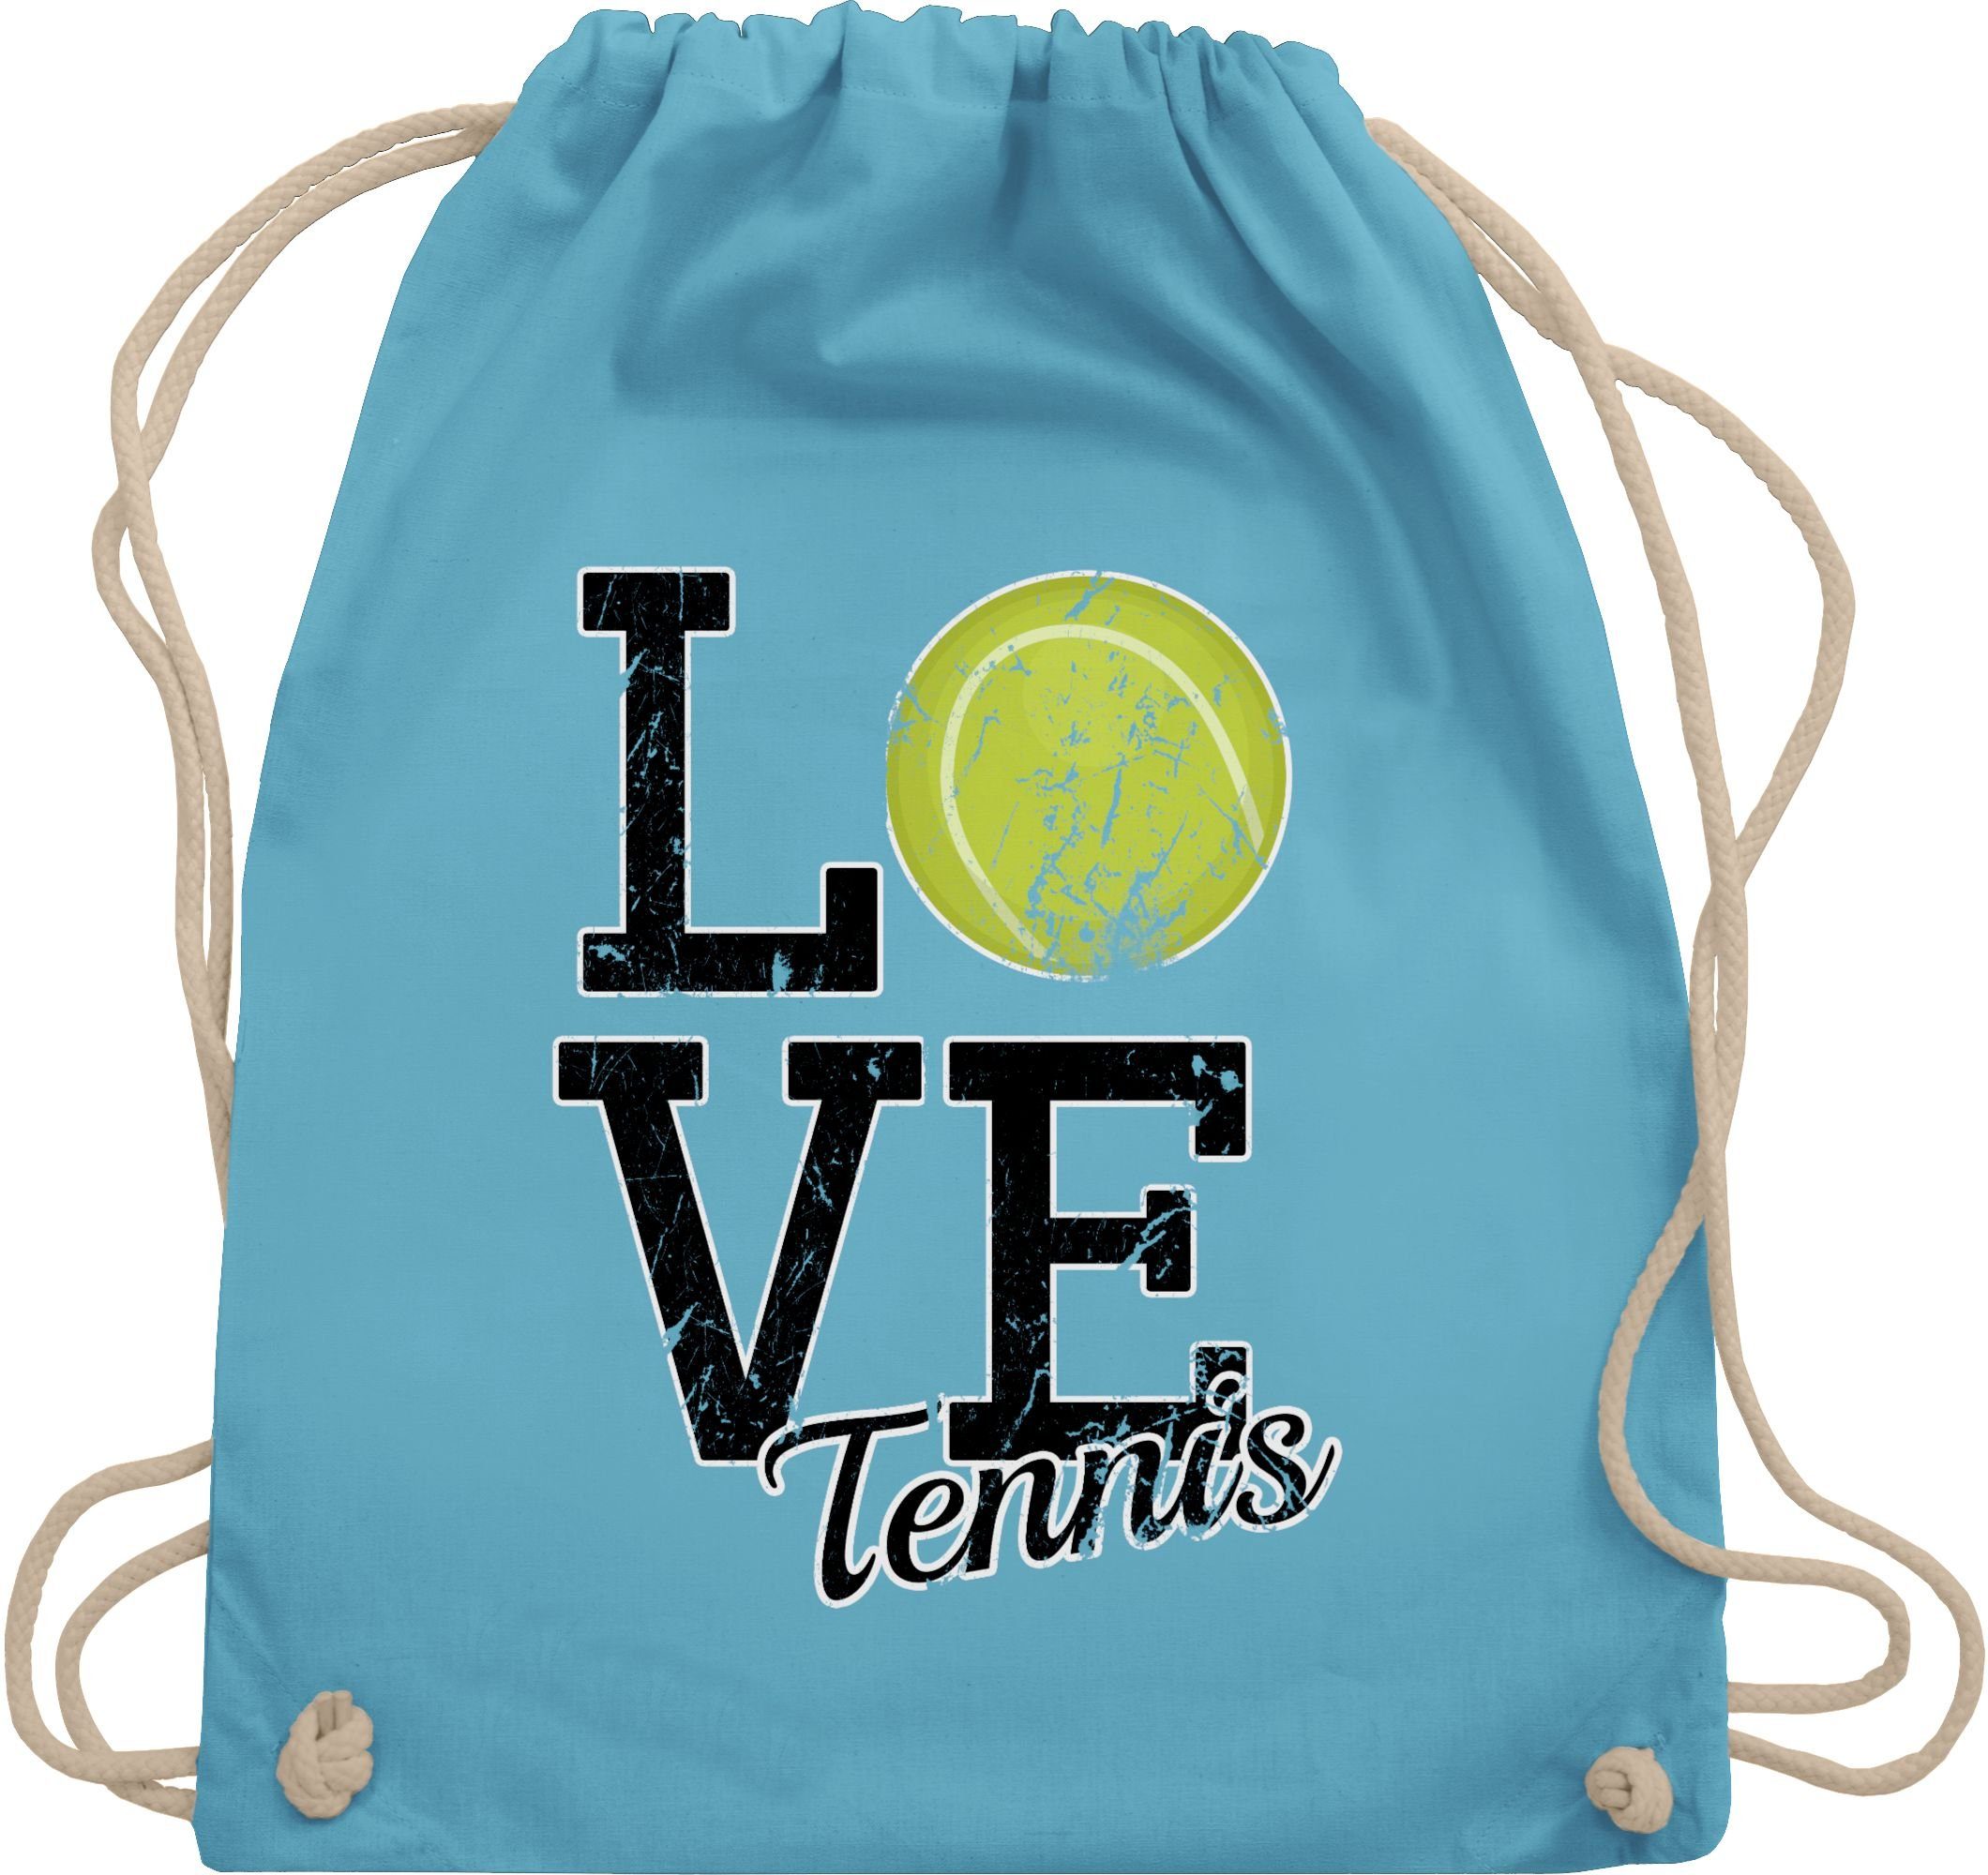 Shirtracer Turnbeutel Love Tennis, Tennis Zubehör